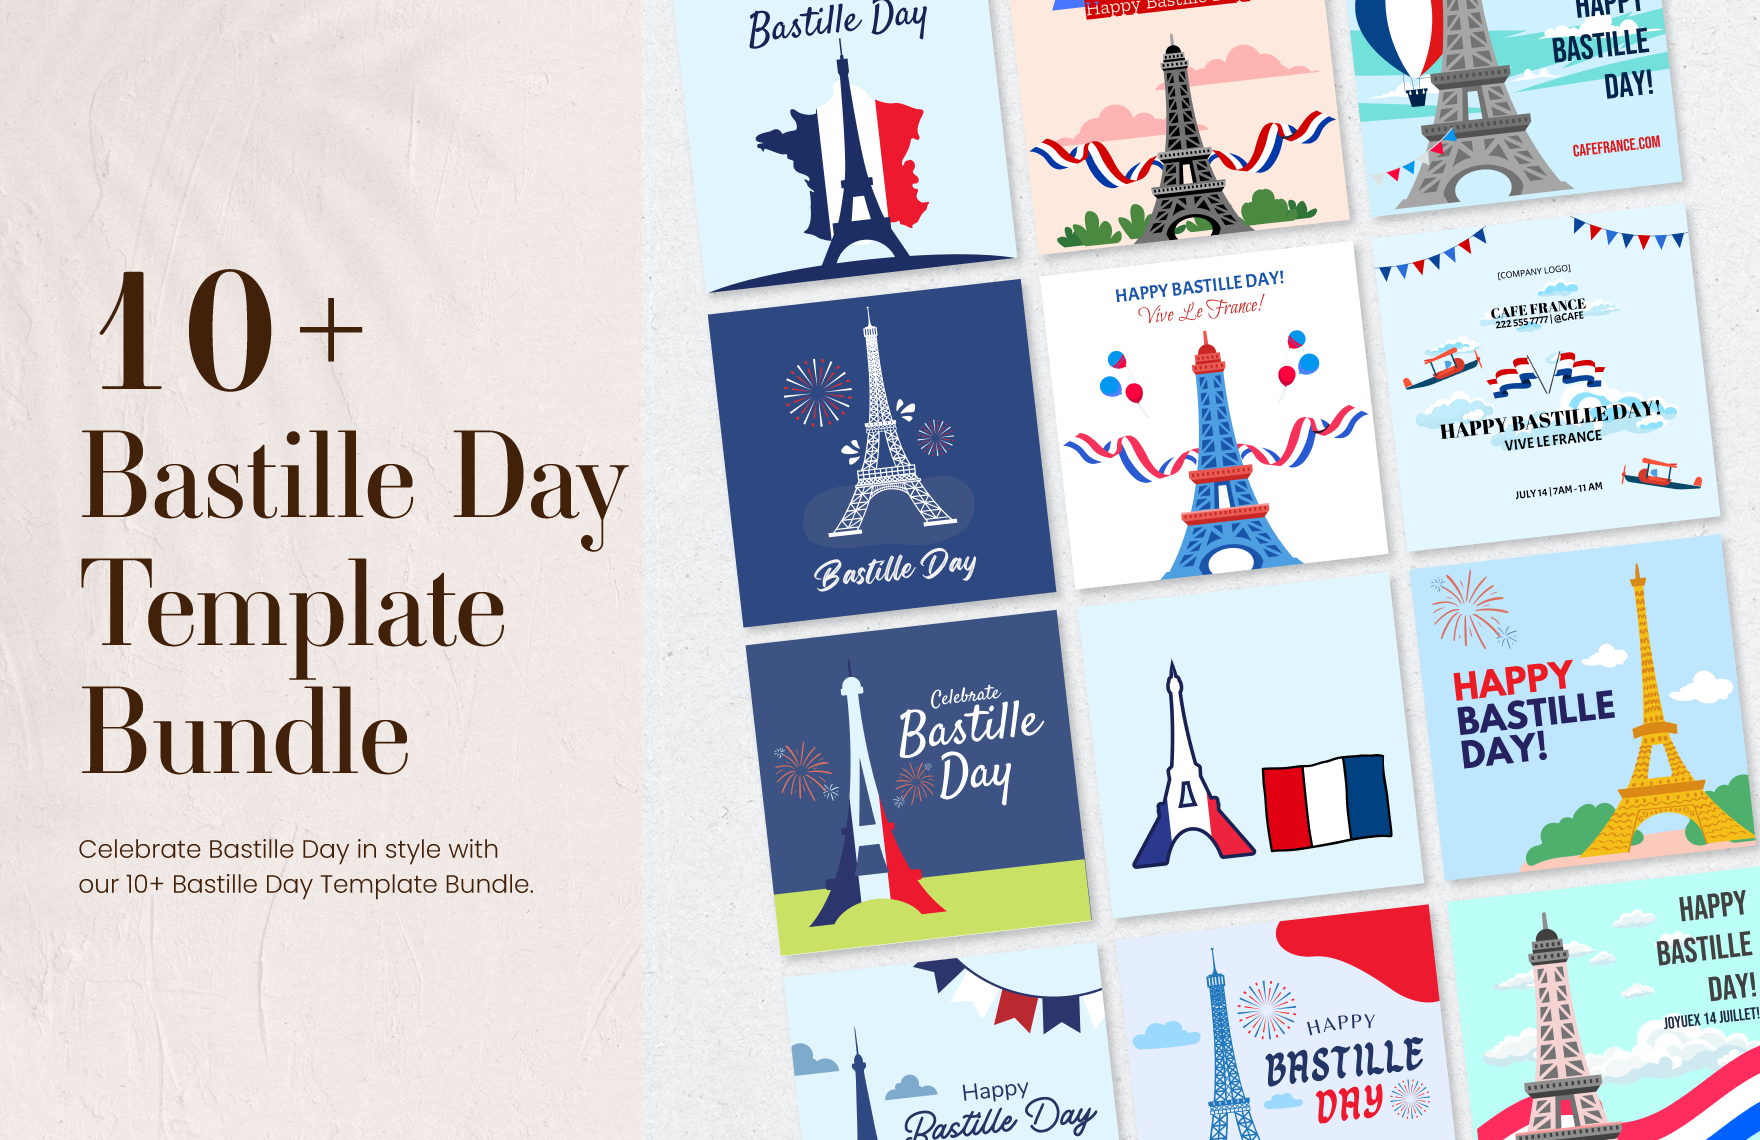 10+ Bastille Day Template Bundle in Illustrator, PSD, EPS, SVG, PNG, JPEG